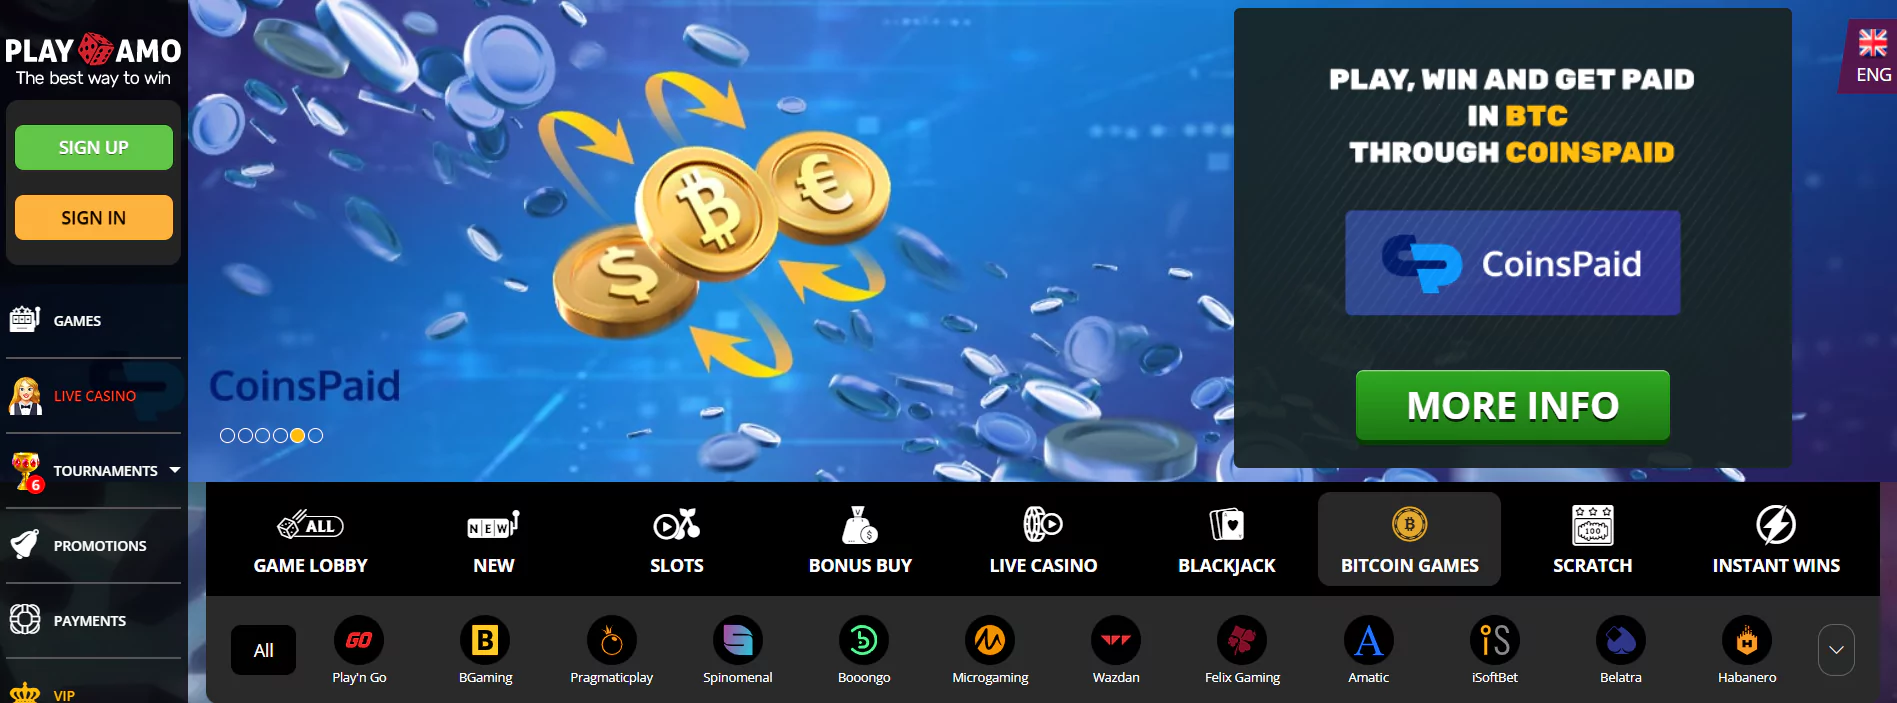 Screenshot of Play Amo - Online BTC Casino